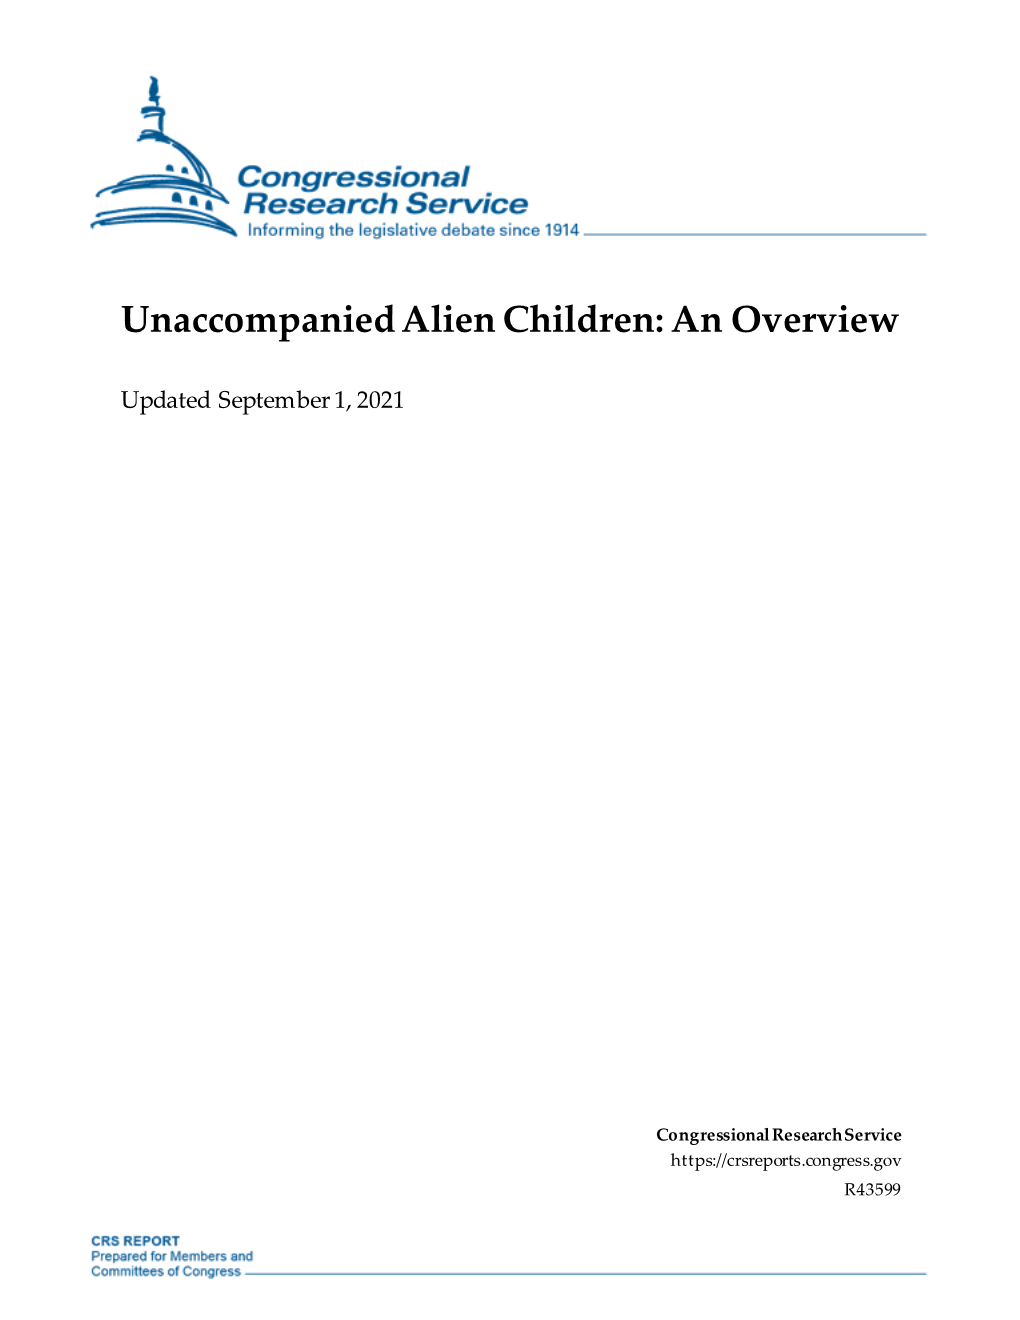 Unaccompanied Alien Children: an Overview